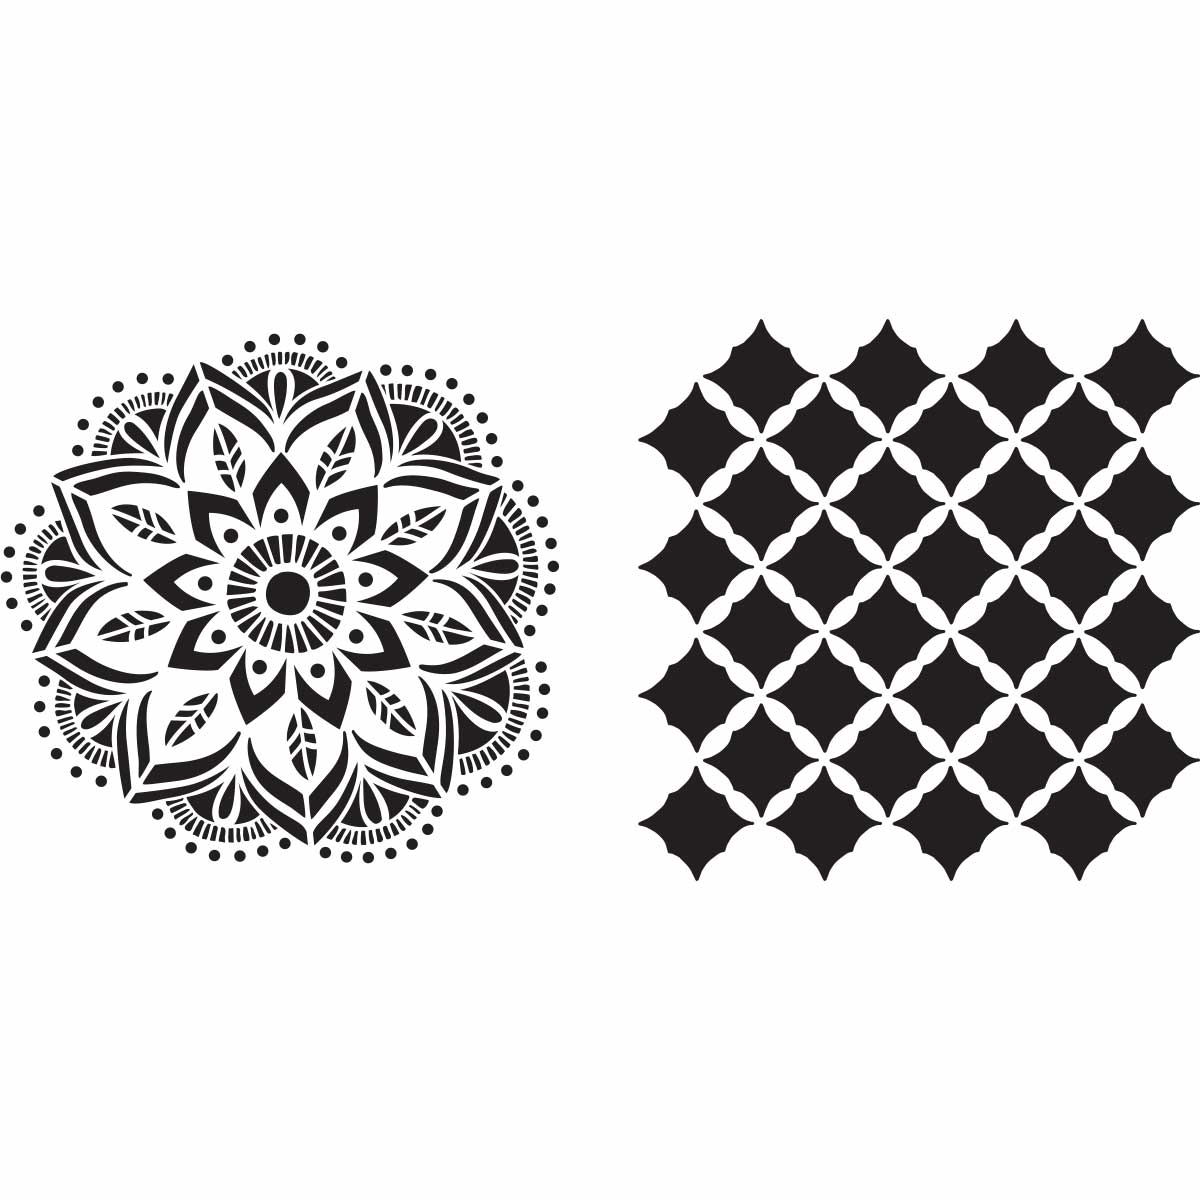 Shop Plaid Fabric Creations™ Adhesive Stencils - Mandala, 6 x 6 - 98811 -  98811